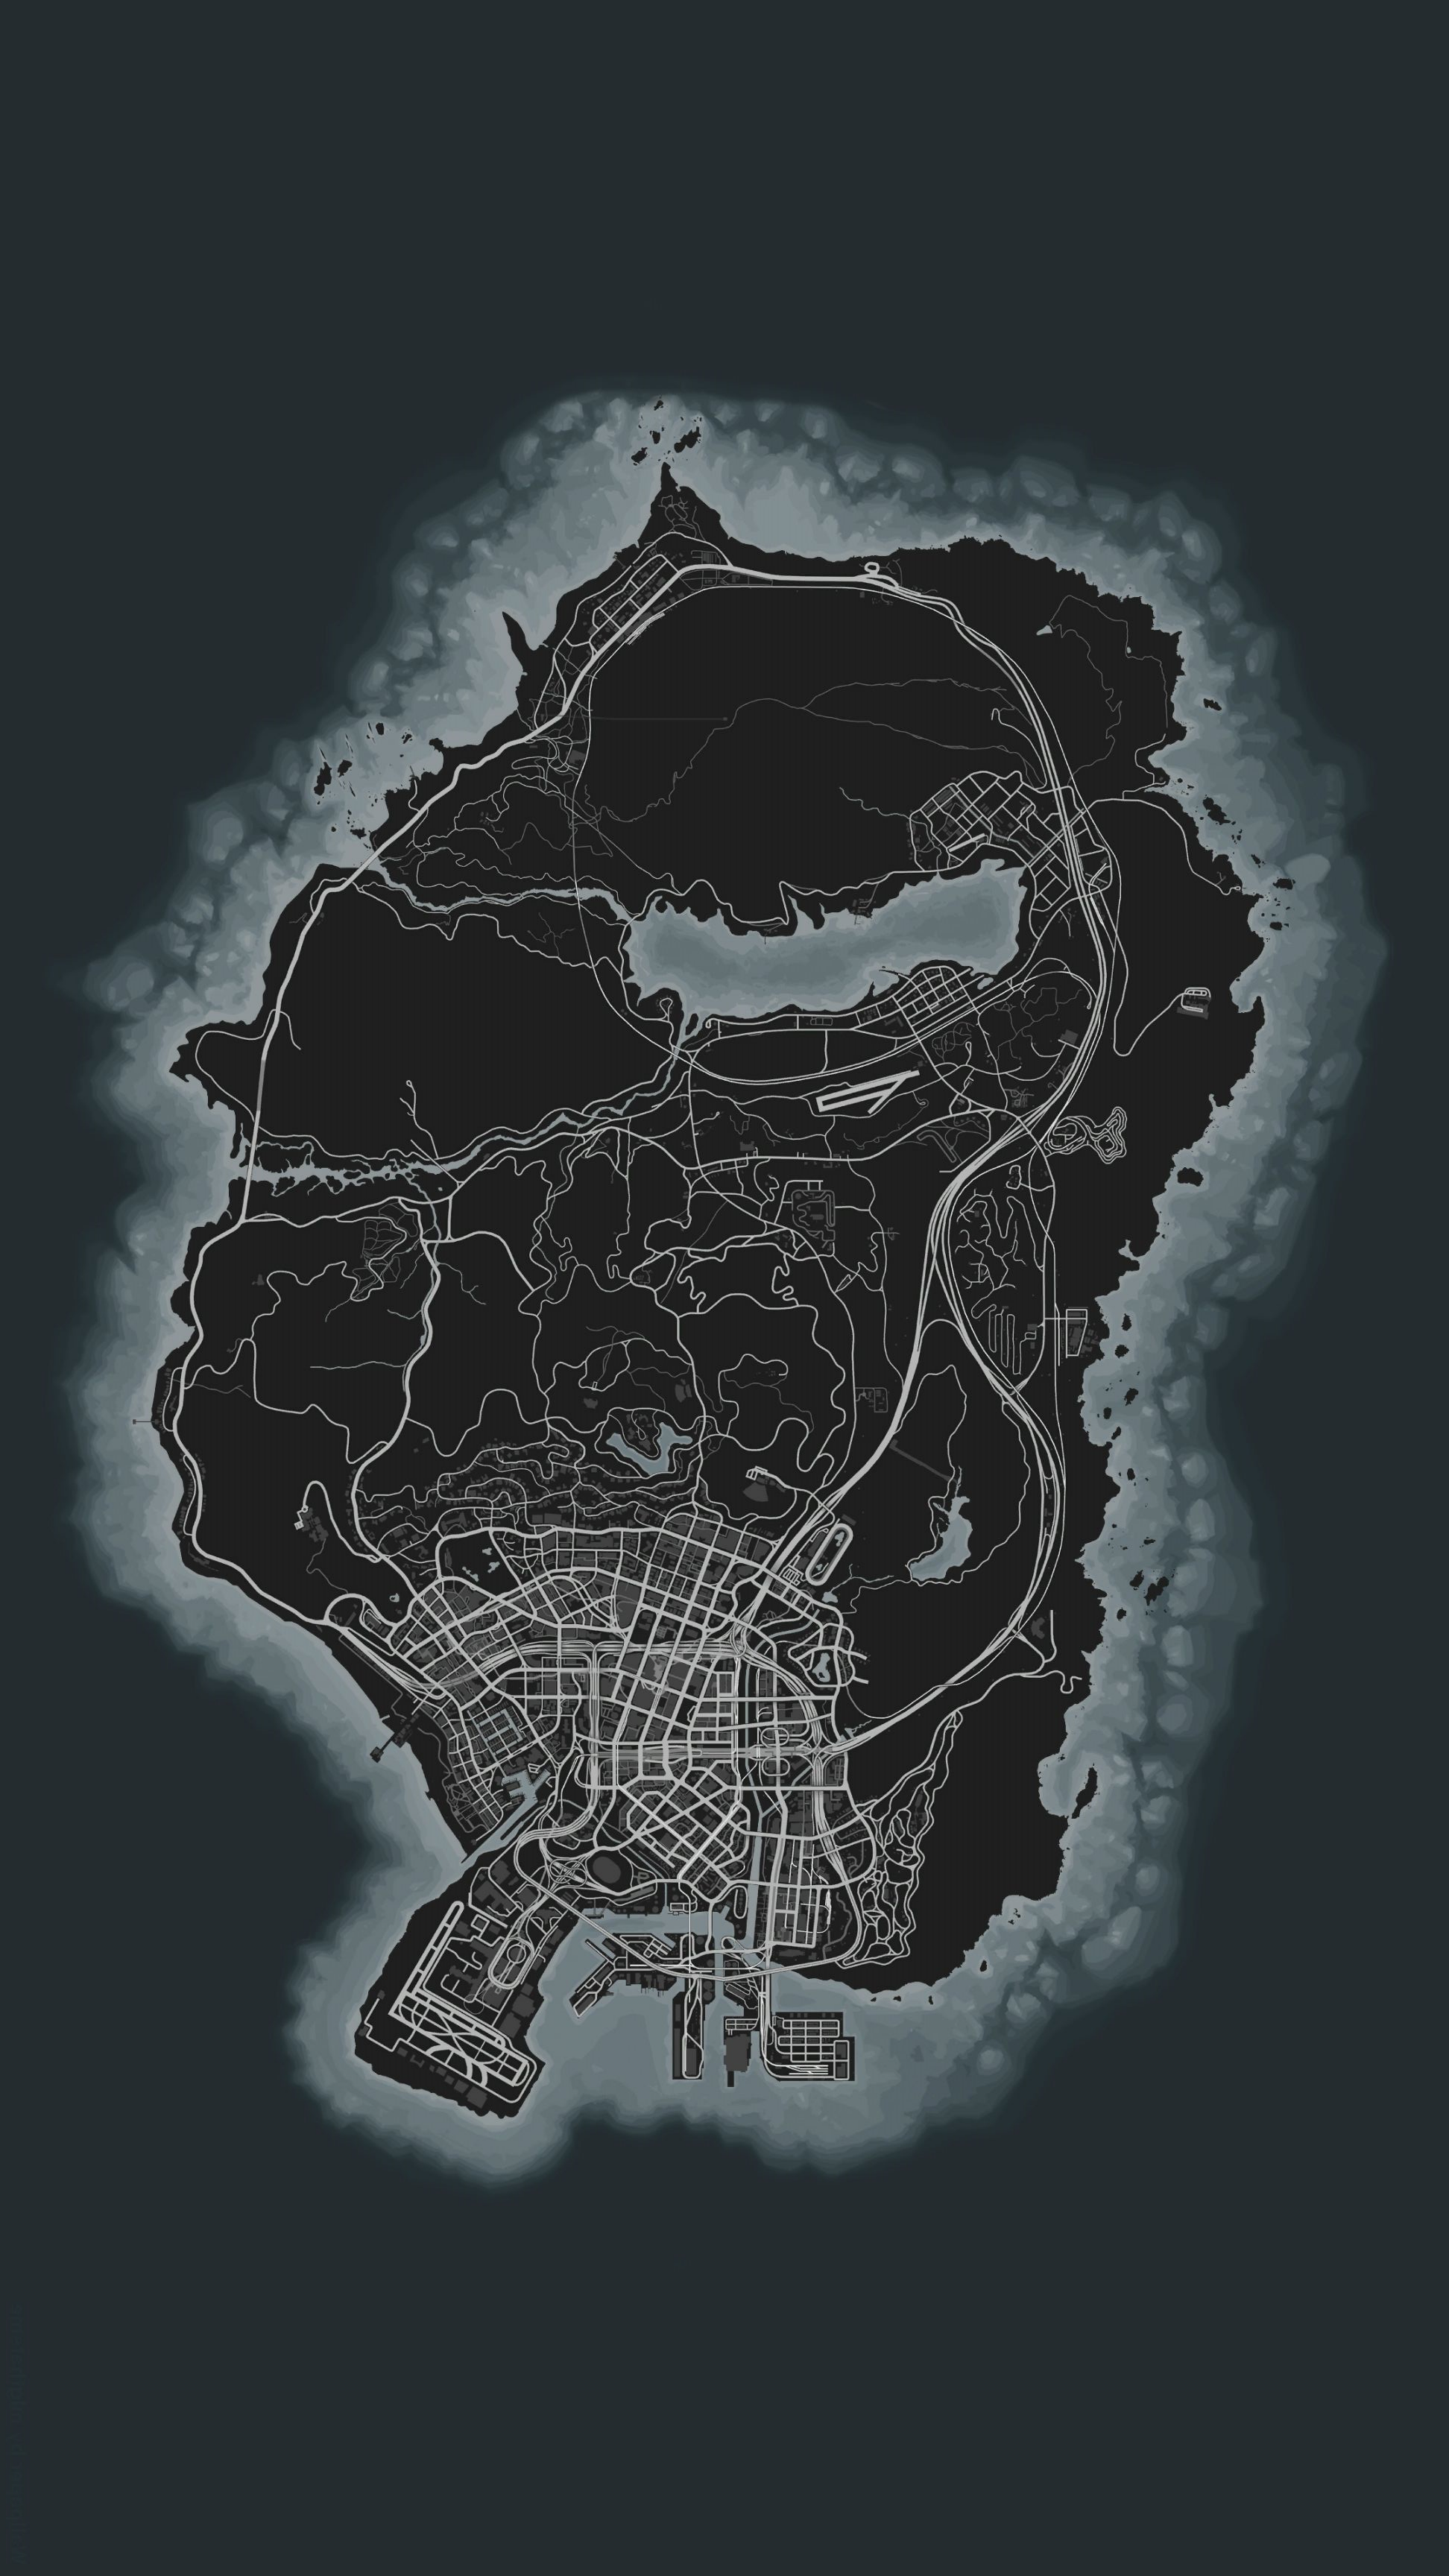 GTA V Map Wallpapers - Wallpaper Cave